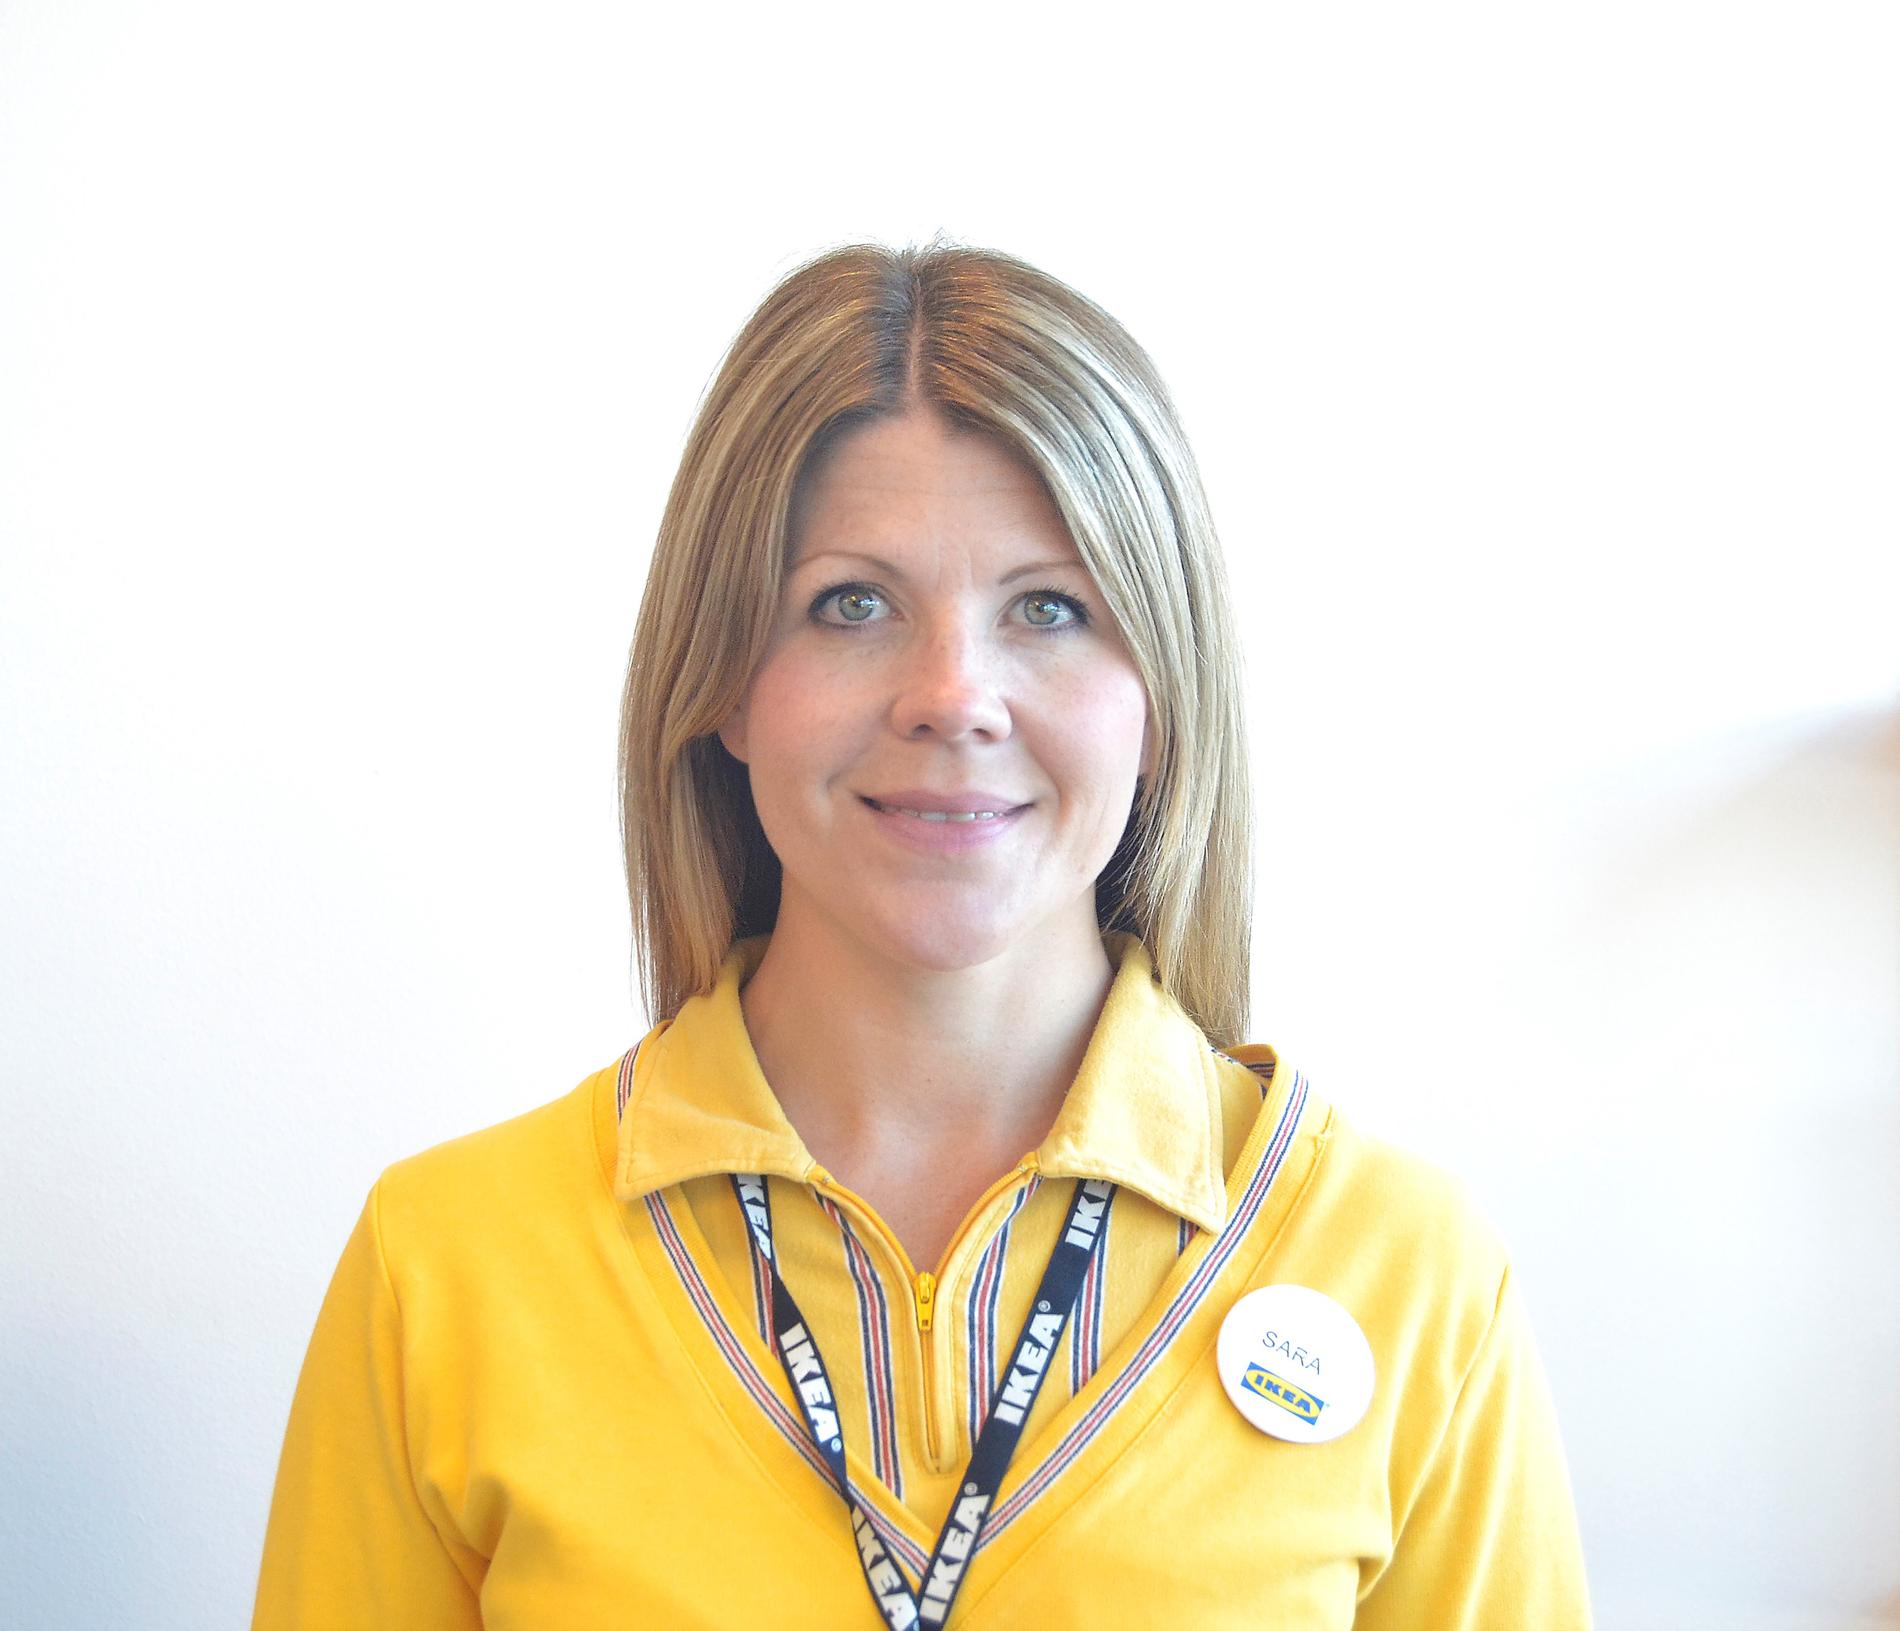  Sara Bergström, kundrelationschef på Ikea Borlänge.